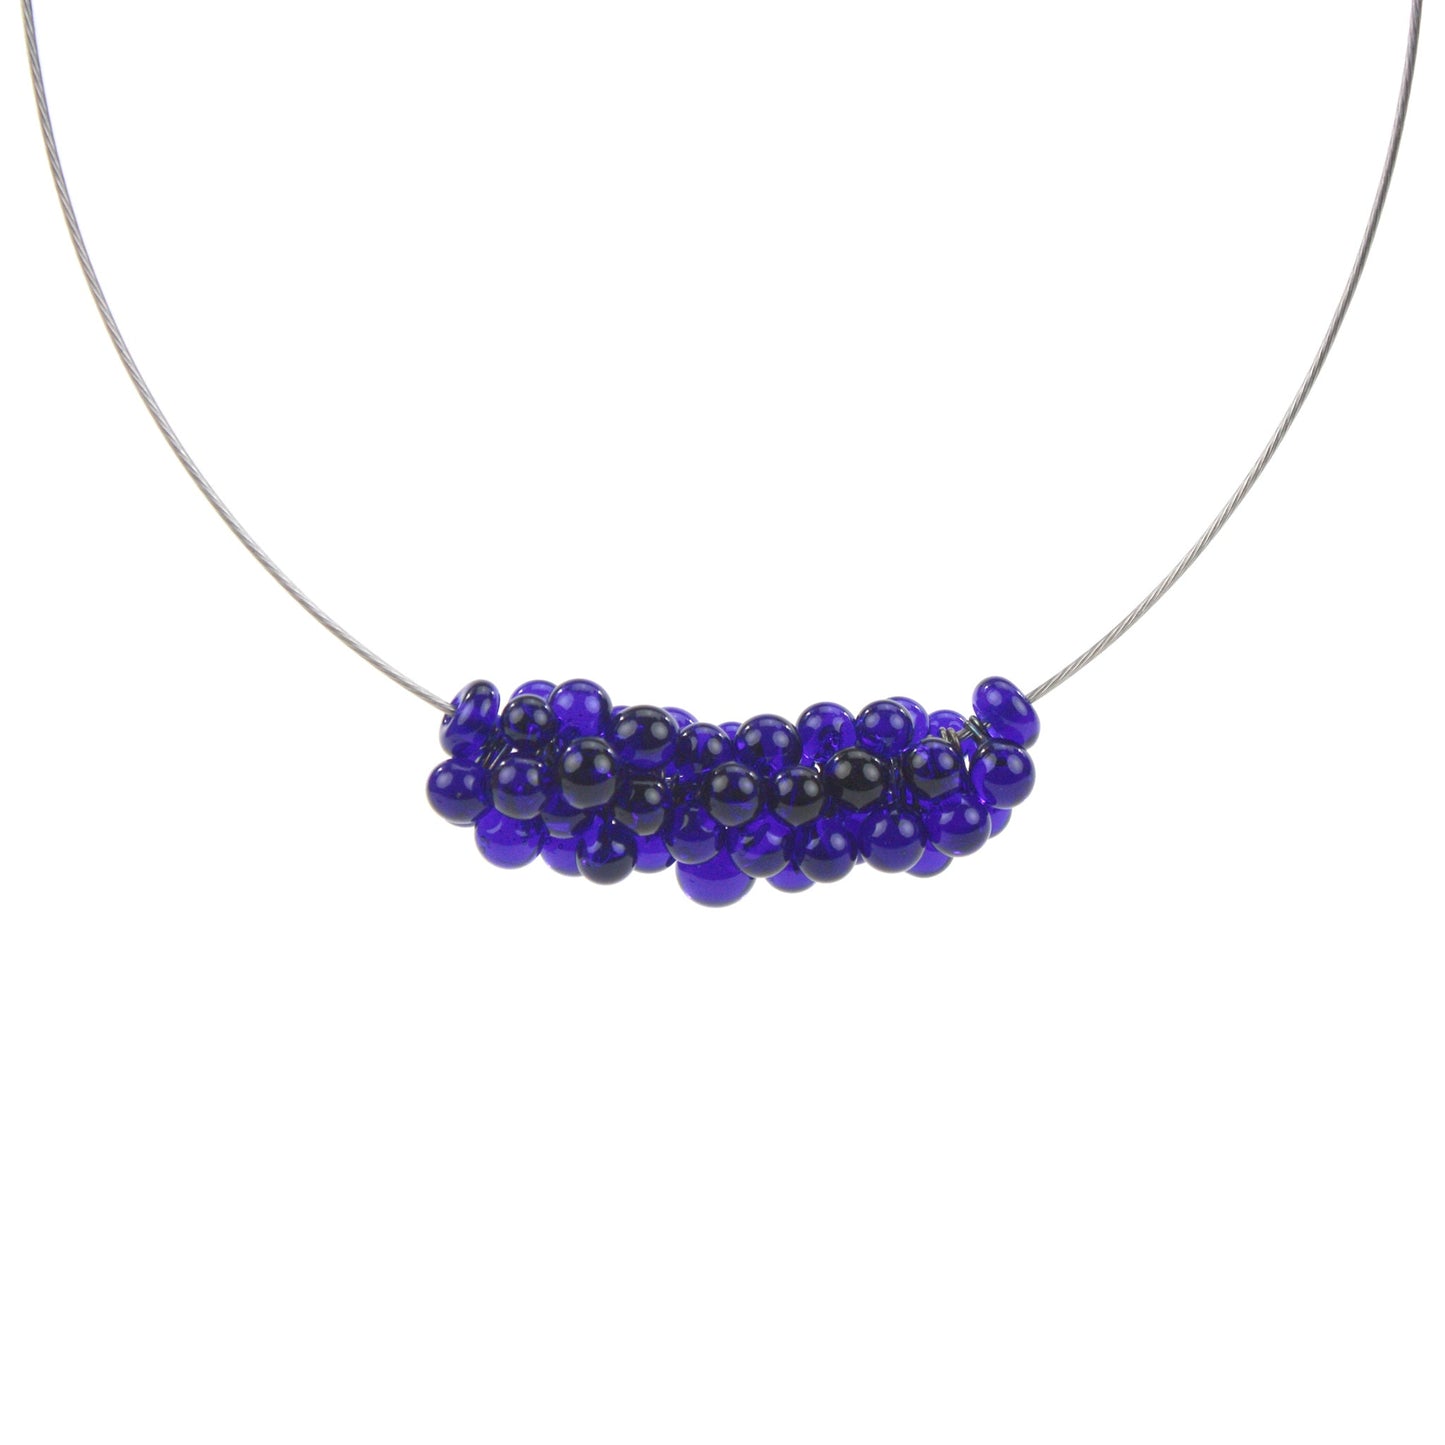 Petite Chroma Necklace in Cobalt